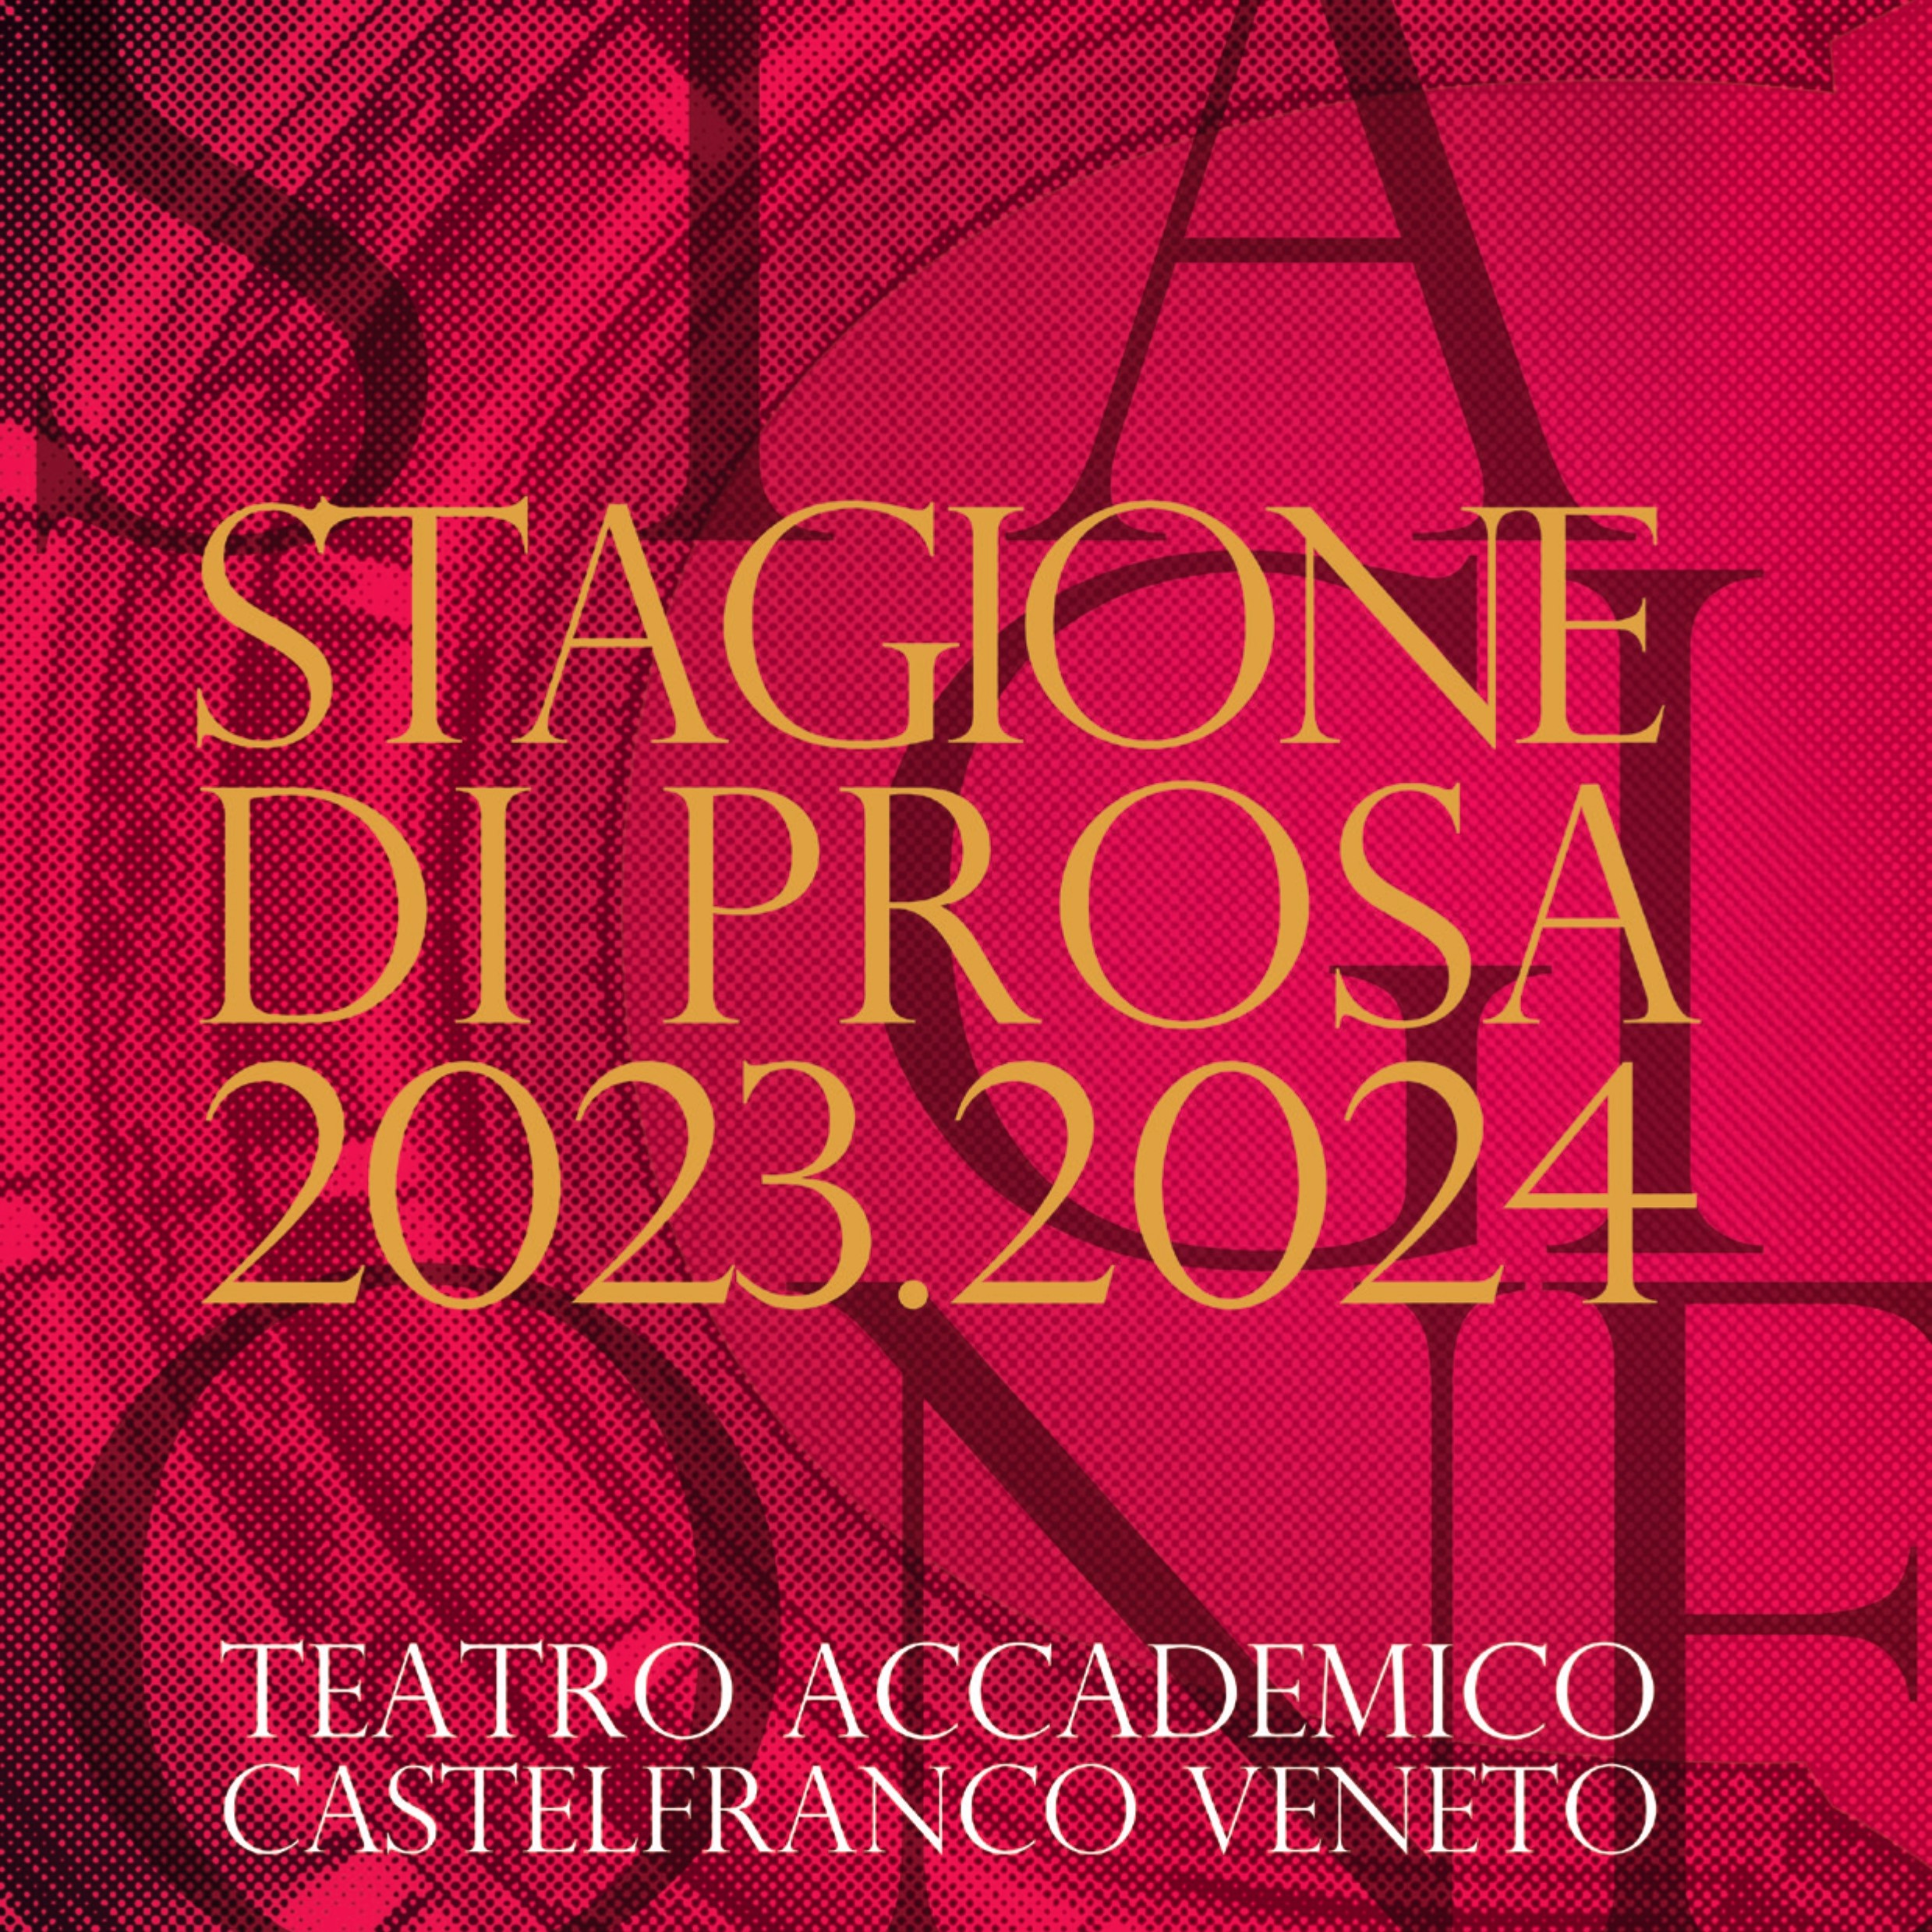 Immagine per Teatro Accademico - Stagione di prosa 2023-2024